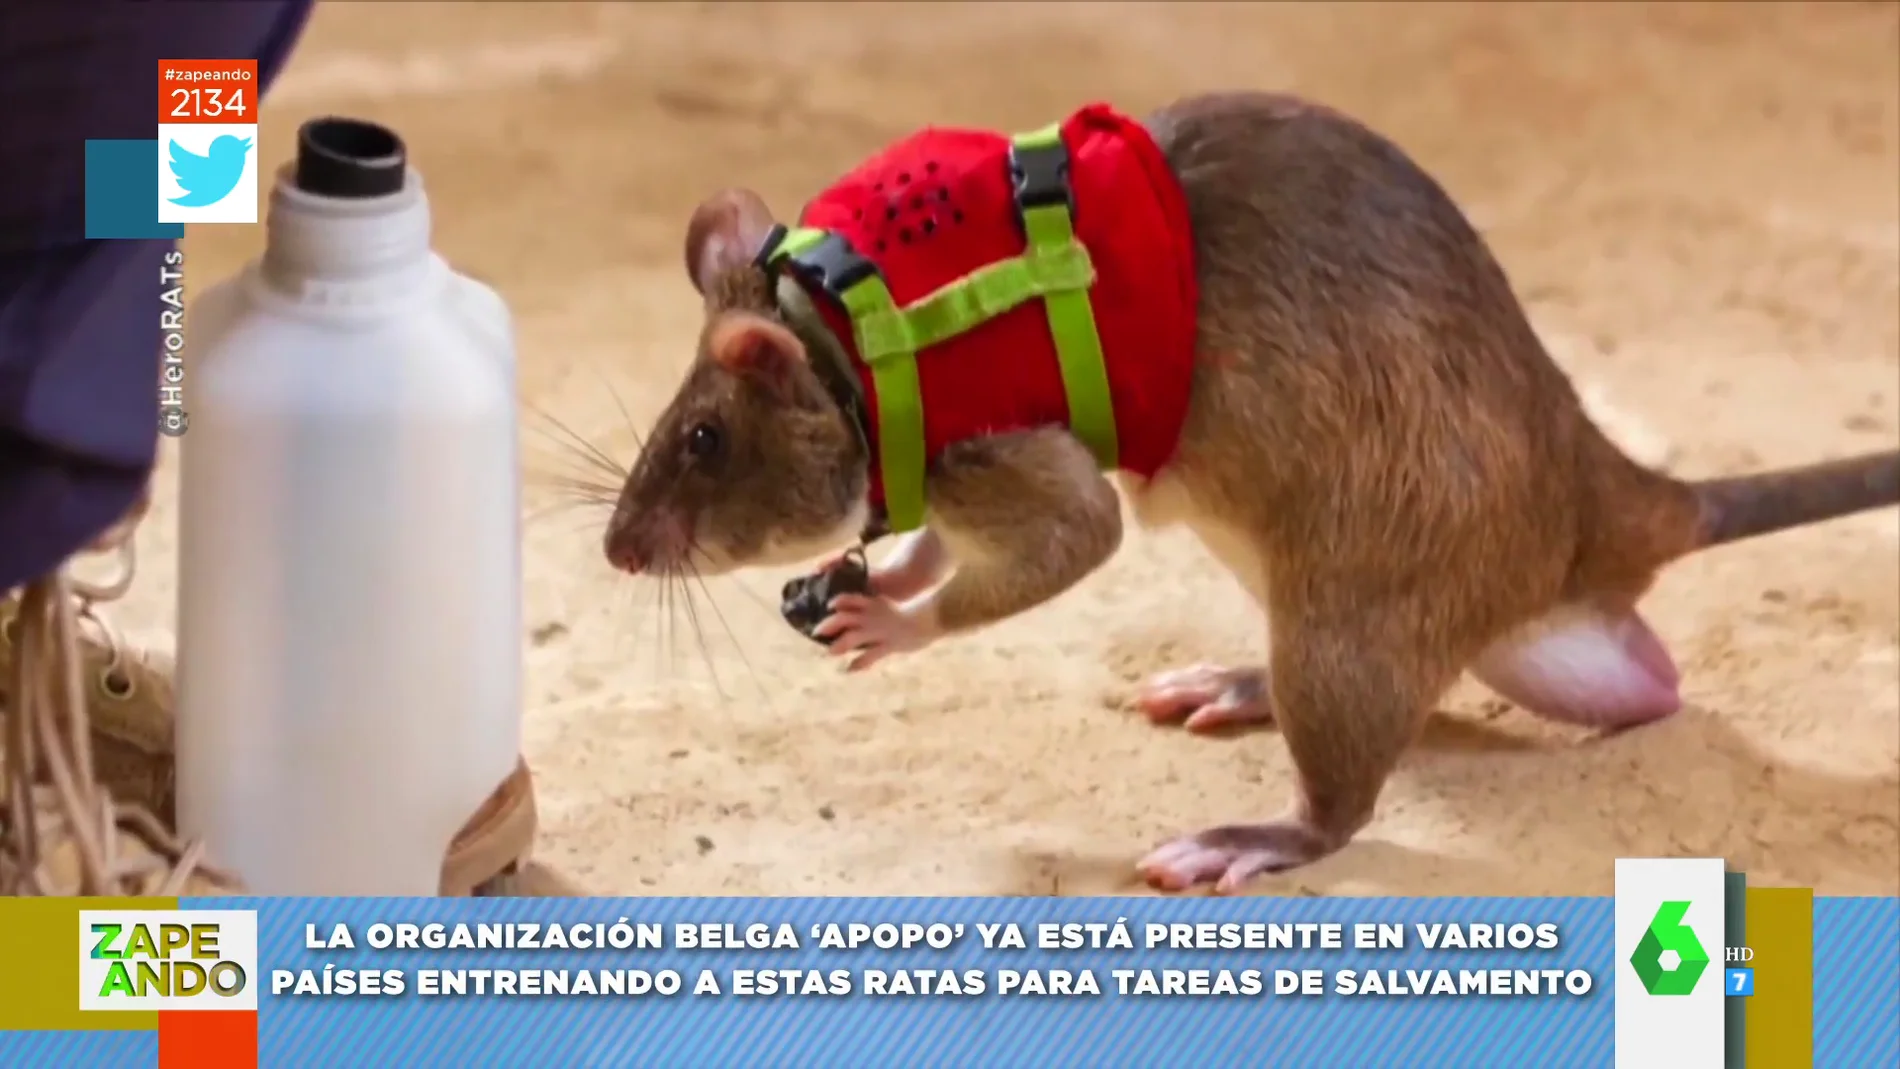 Ratas entrenadas para rescatar y salvar personas